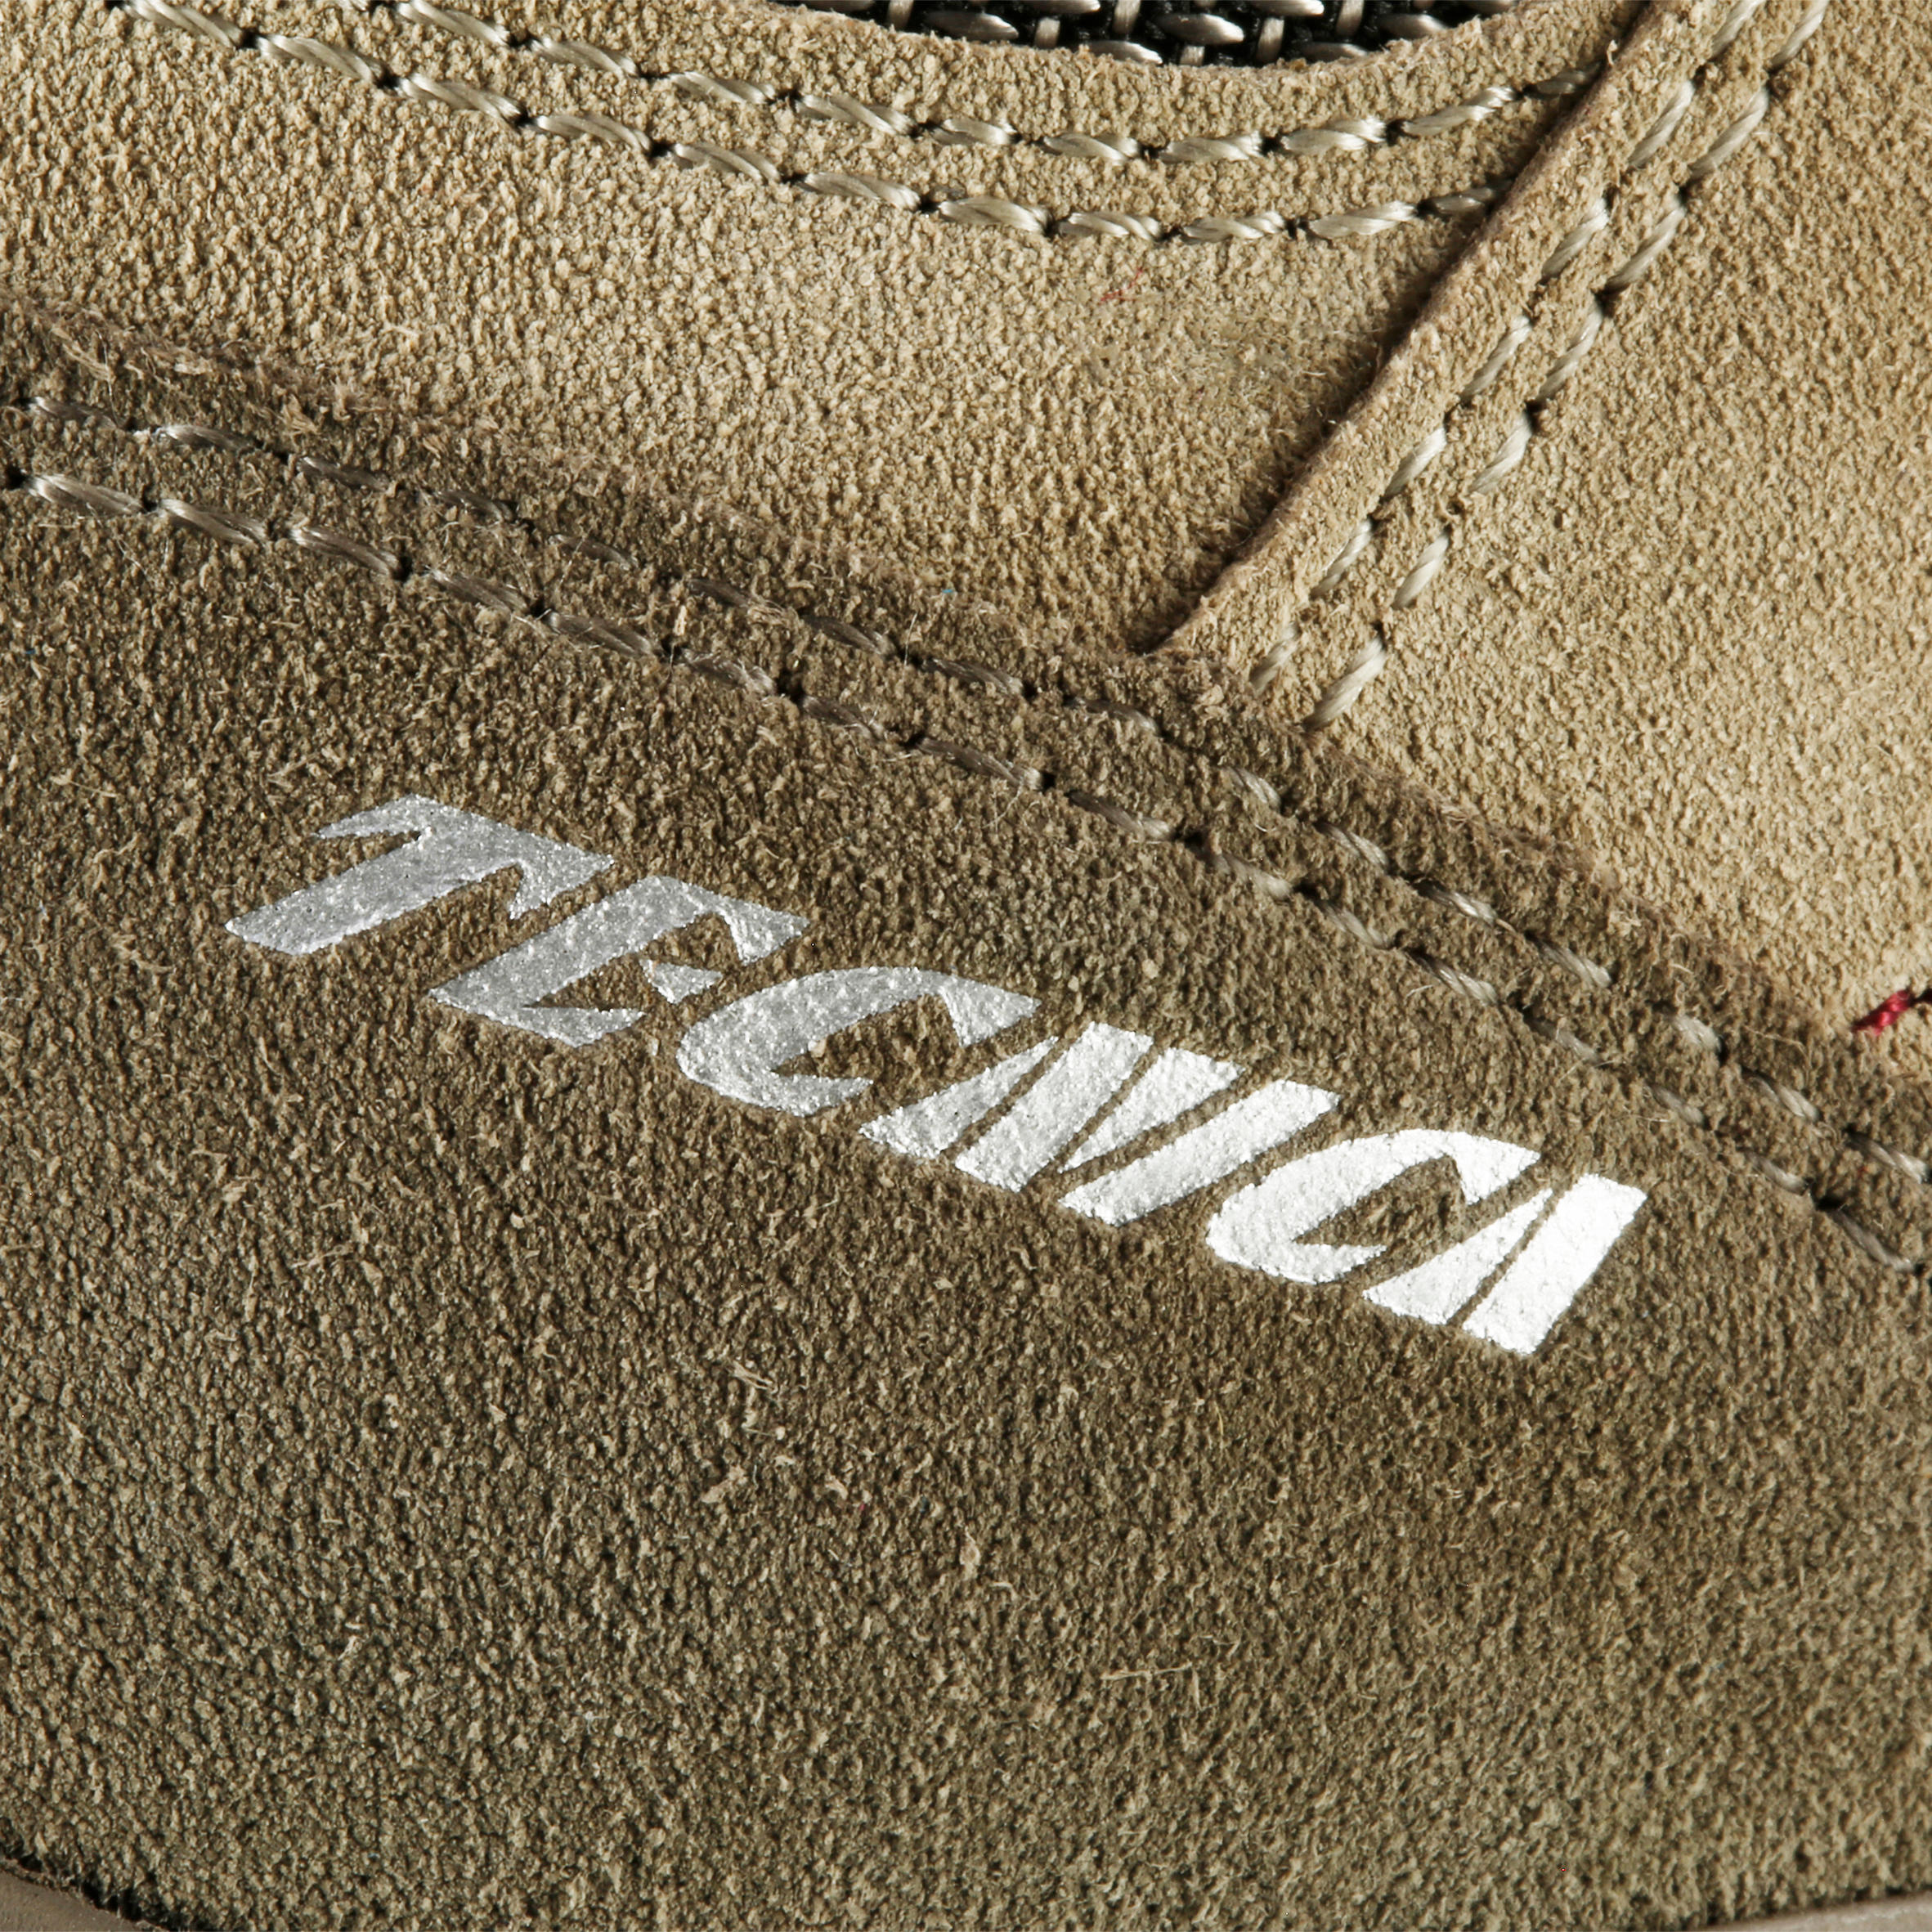 Waterproof Trekking Shoes - GORETEX - VIBRAM-TECNICA STARCROSS - W Beige 10/13